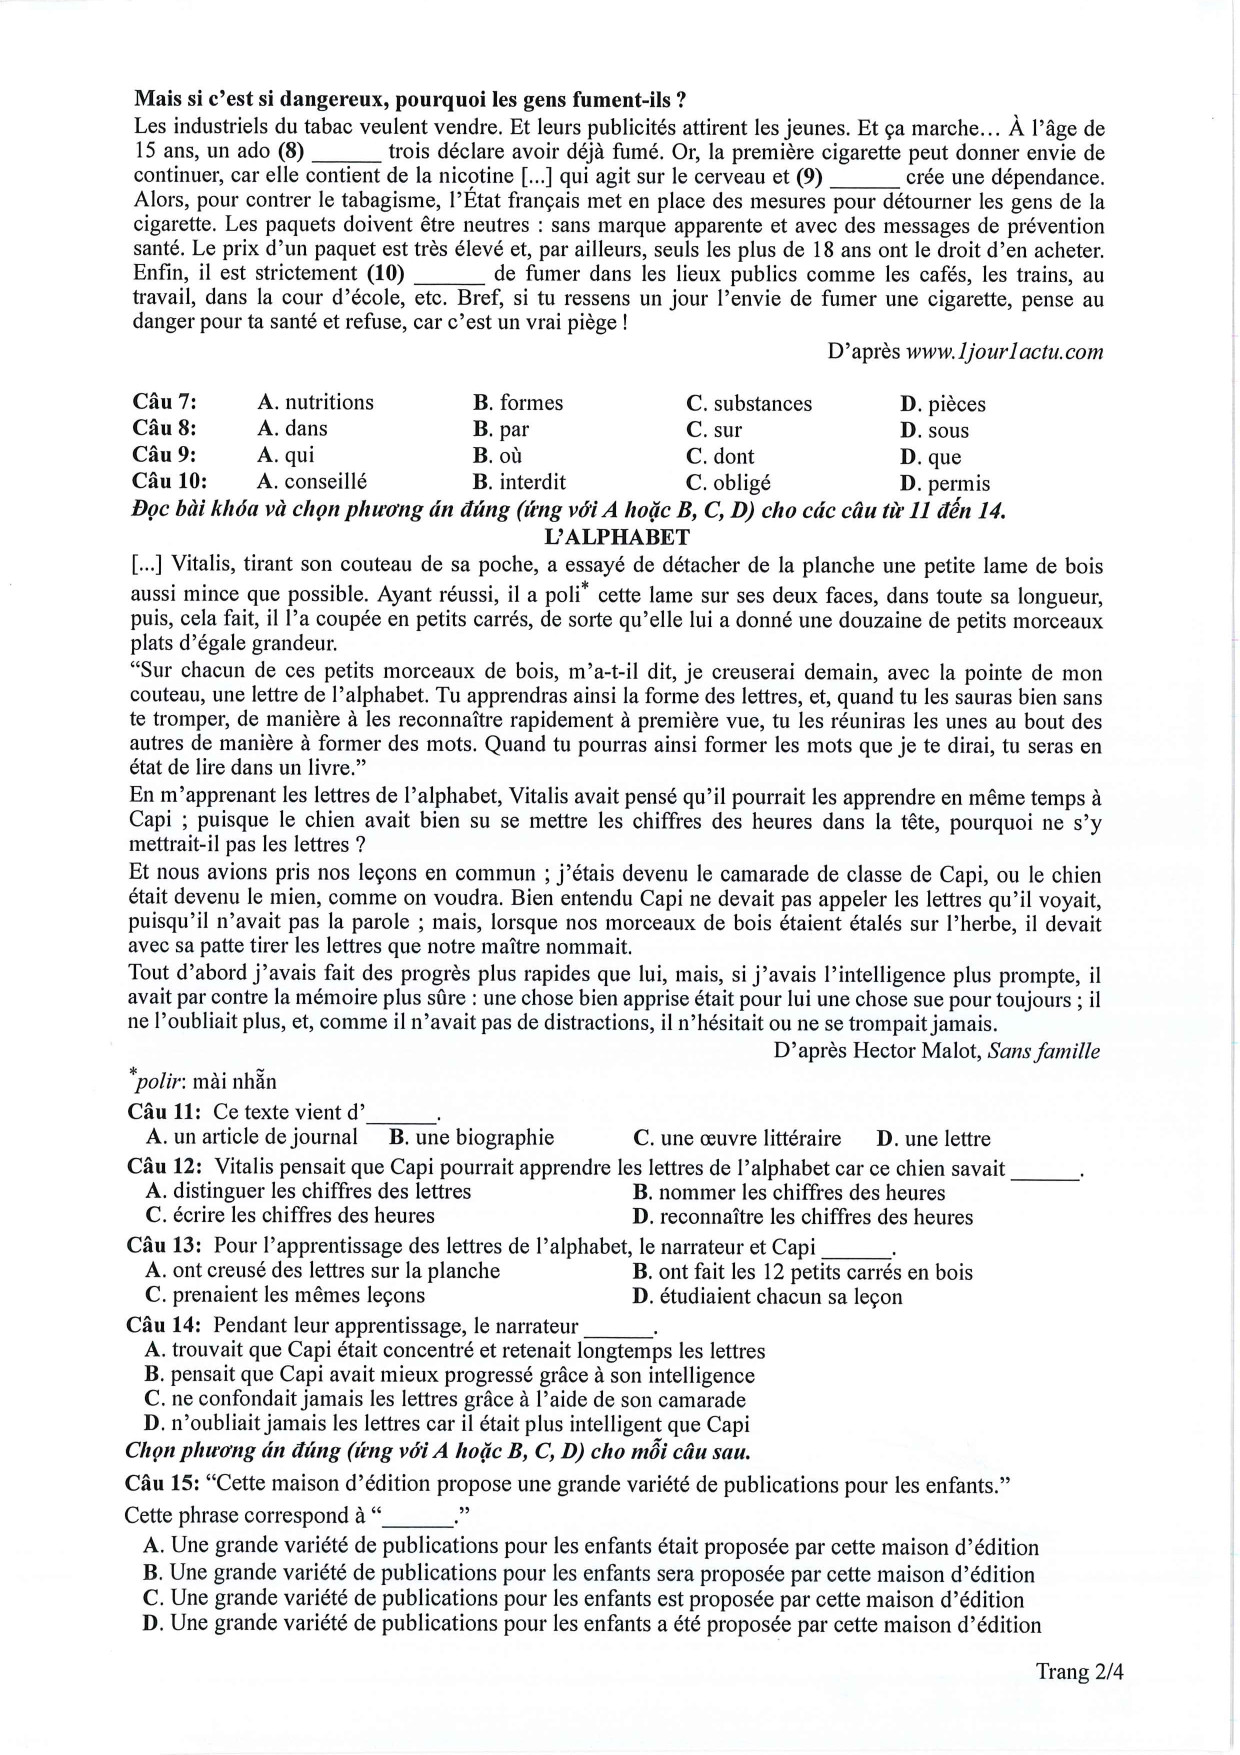 Đề tham khảo tốt nghiệp THPT môn Tiếng Pháp năm 2024 (có đáp án chi tiết) (ảnh 1)